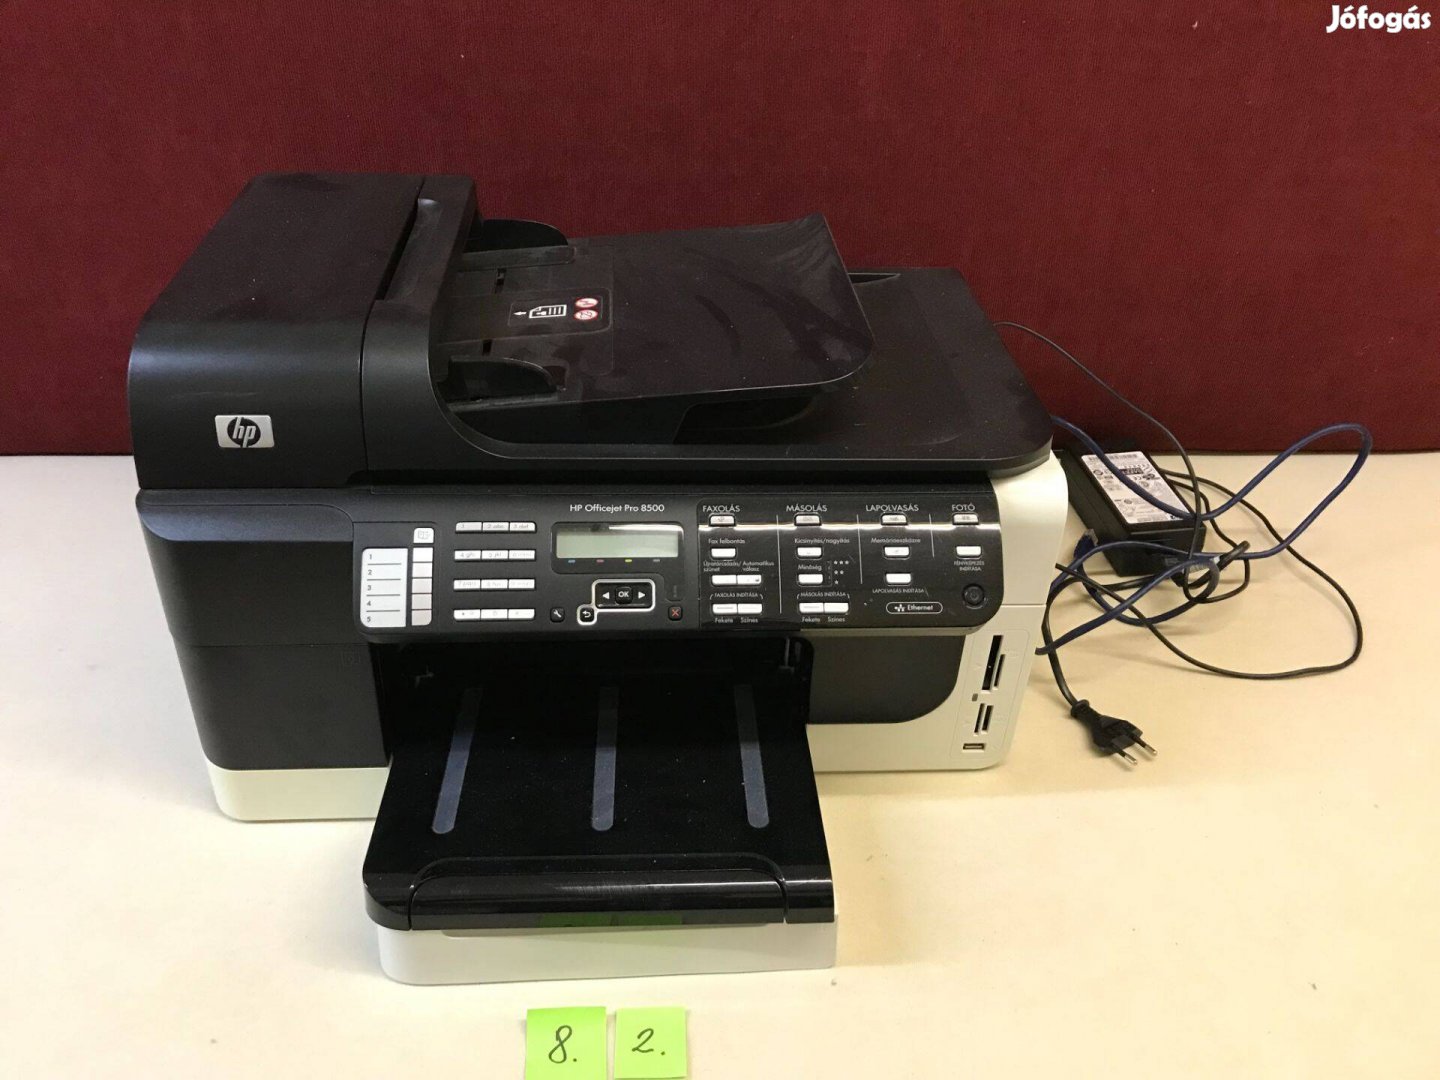 HP Officejet Pro 8500 többfunkciós nyomtató